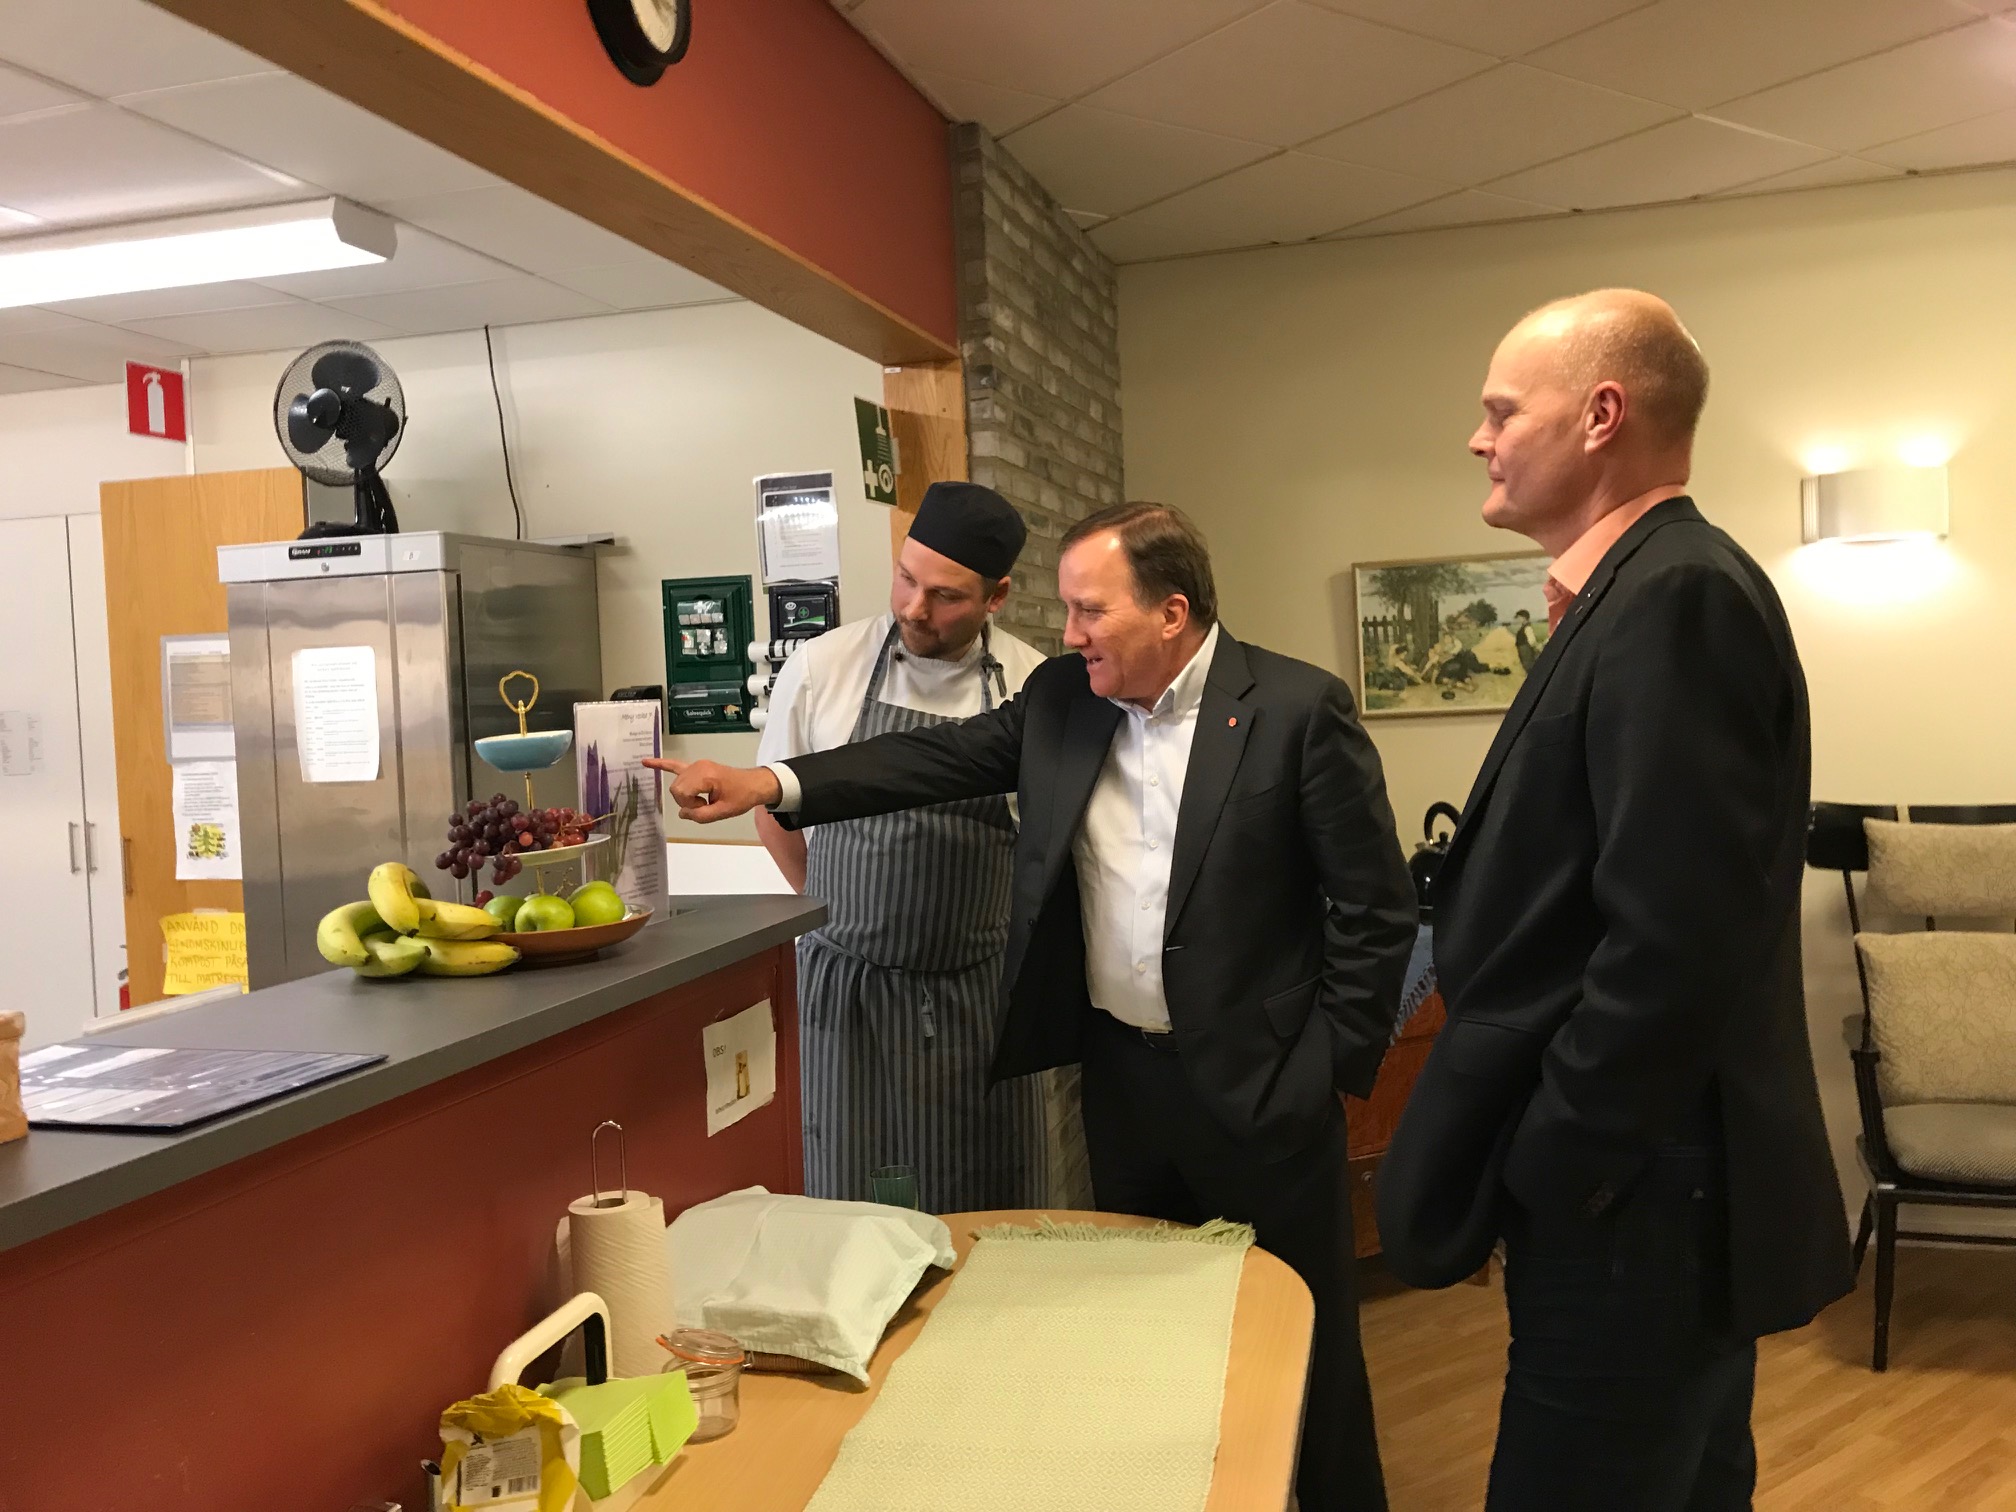 Kocken Pål Åhman visar veckans meny - rätter som fläsklägg och raggmunk verkar vara i statsministerns smak